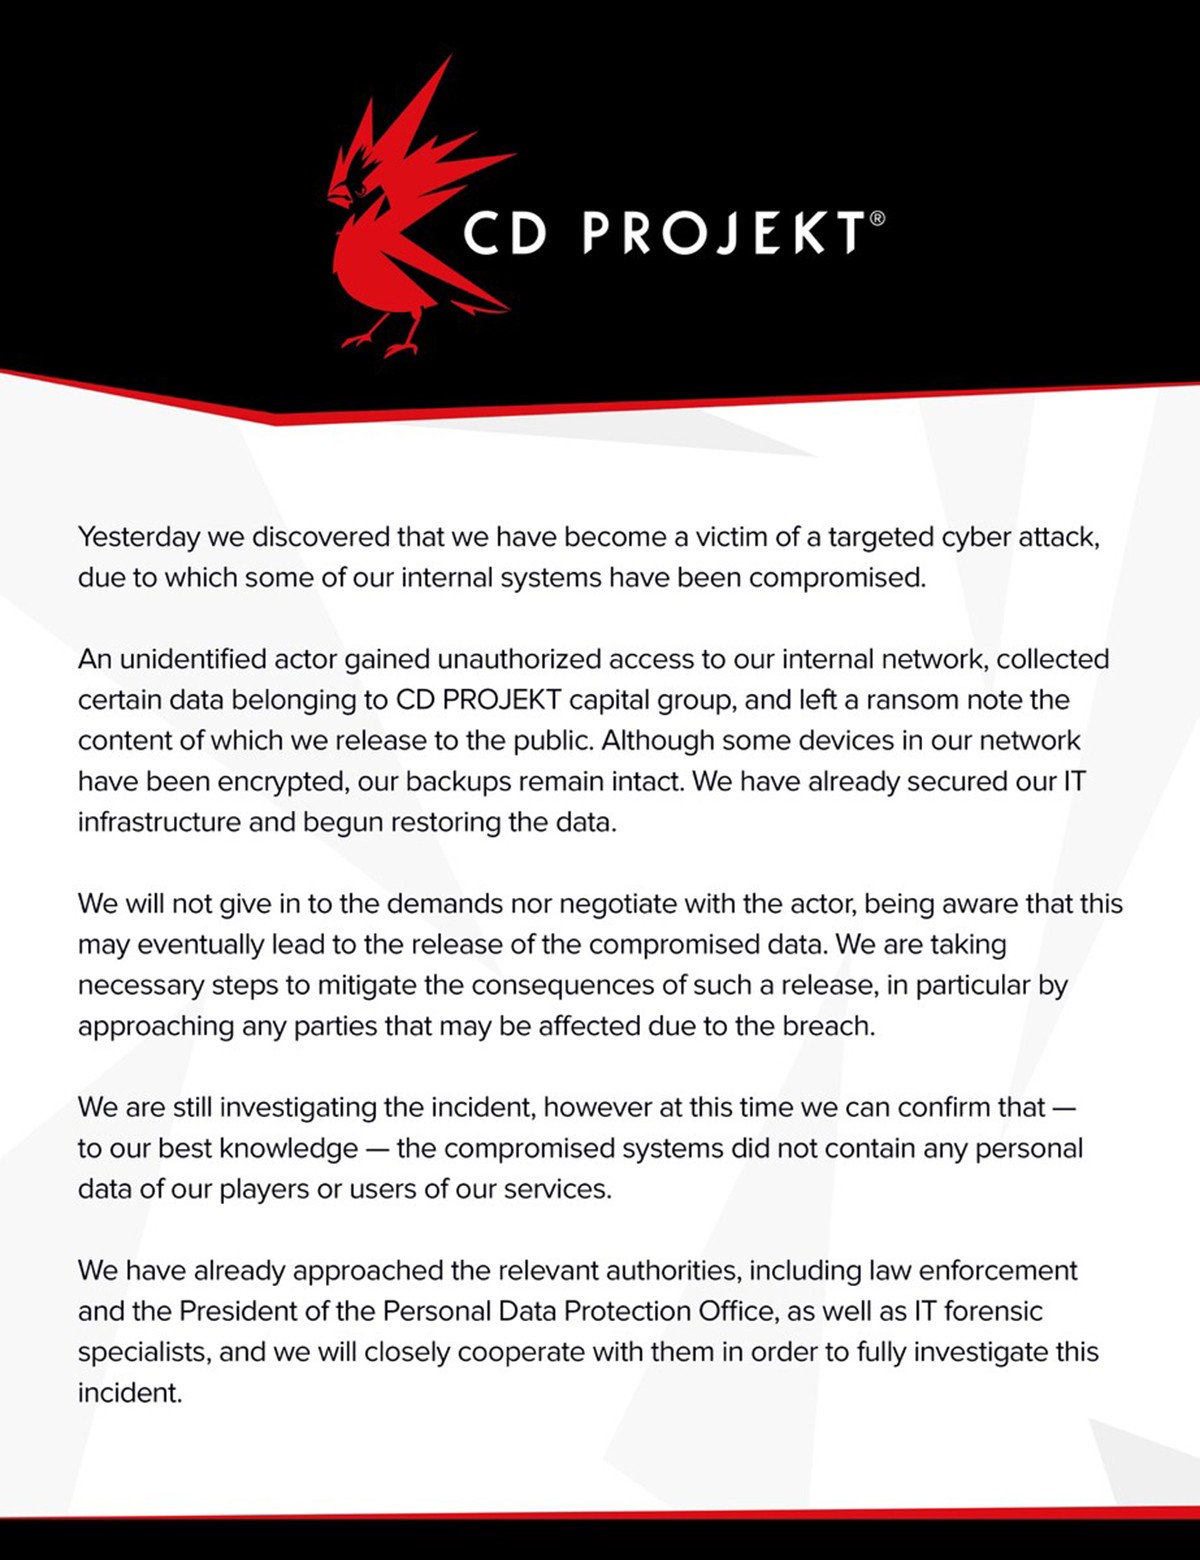 Les codes sources des jeux The Witcher 3 et Cyberpunk 2077 compromis : le studio CD Projekt victime de piratage